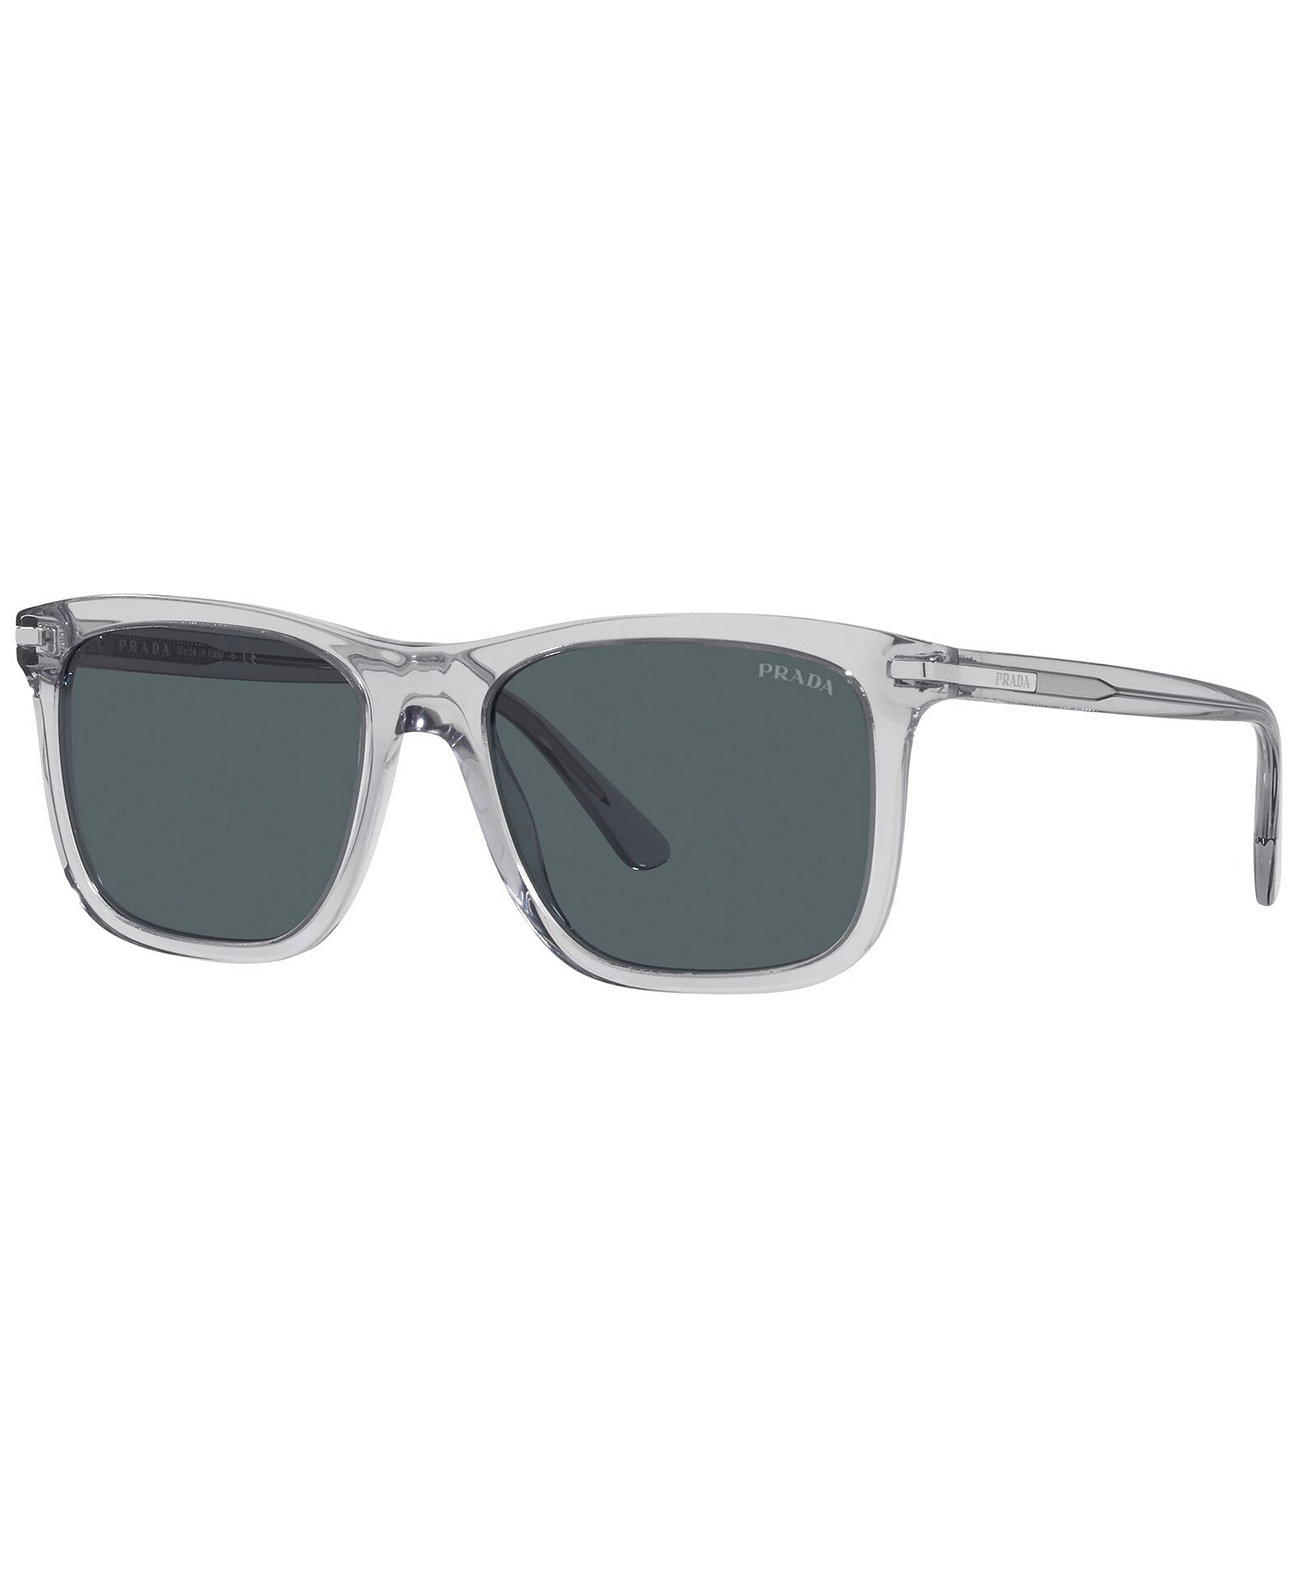 Мужские солнцезащитные очки, PR 18WS 56 Prada